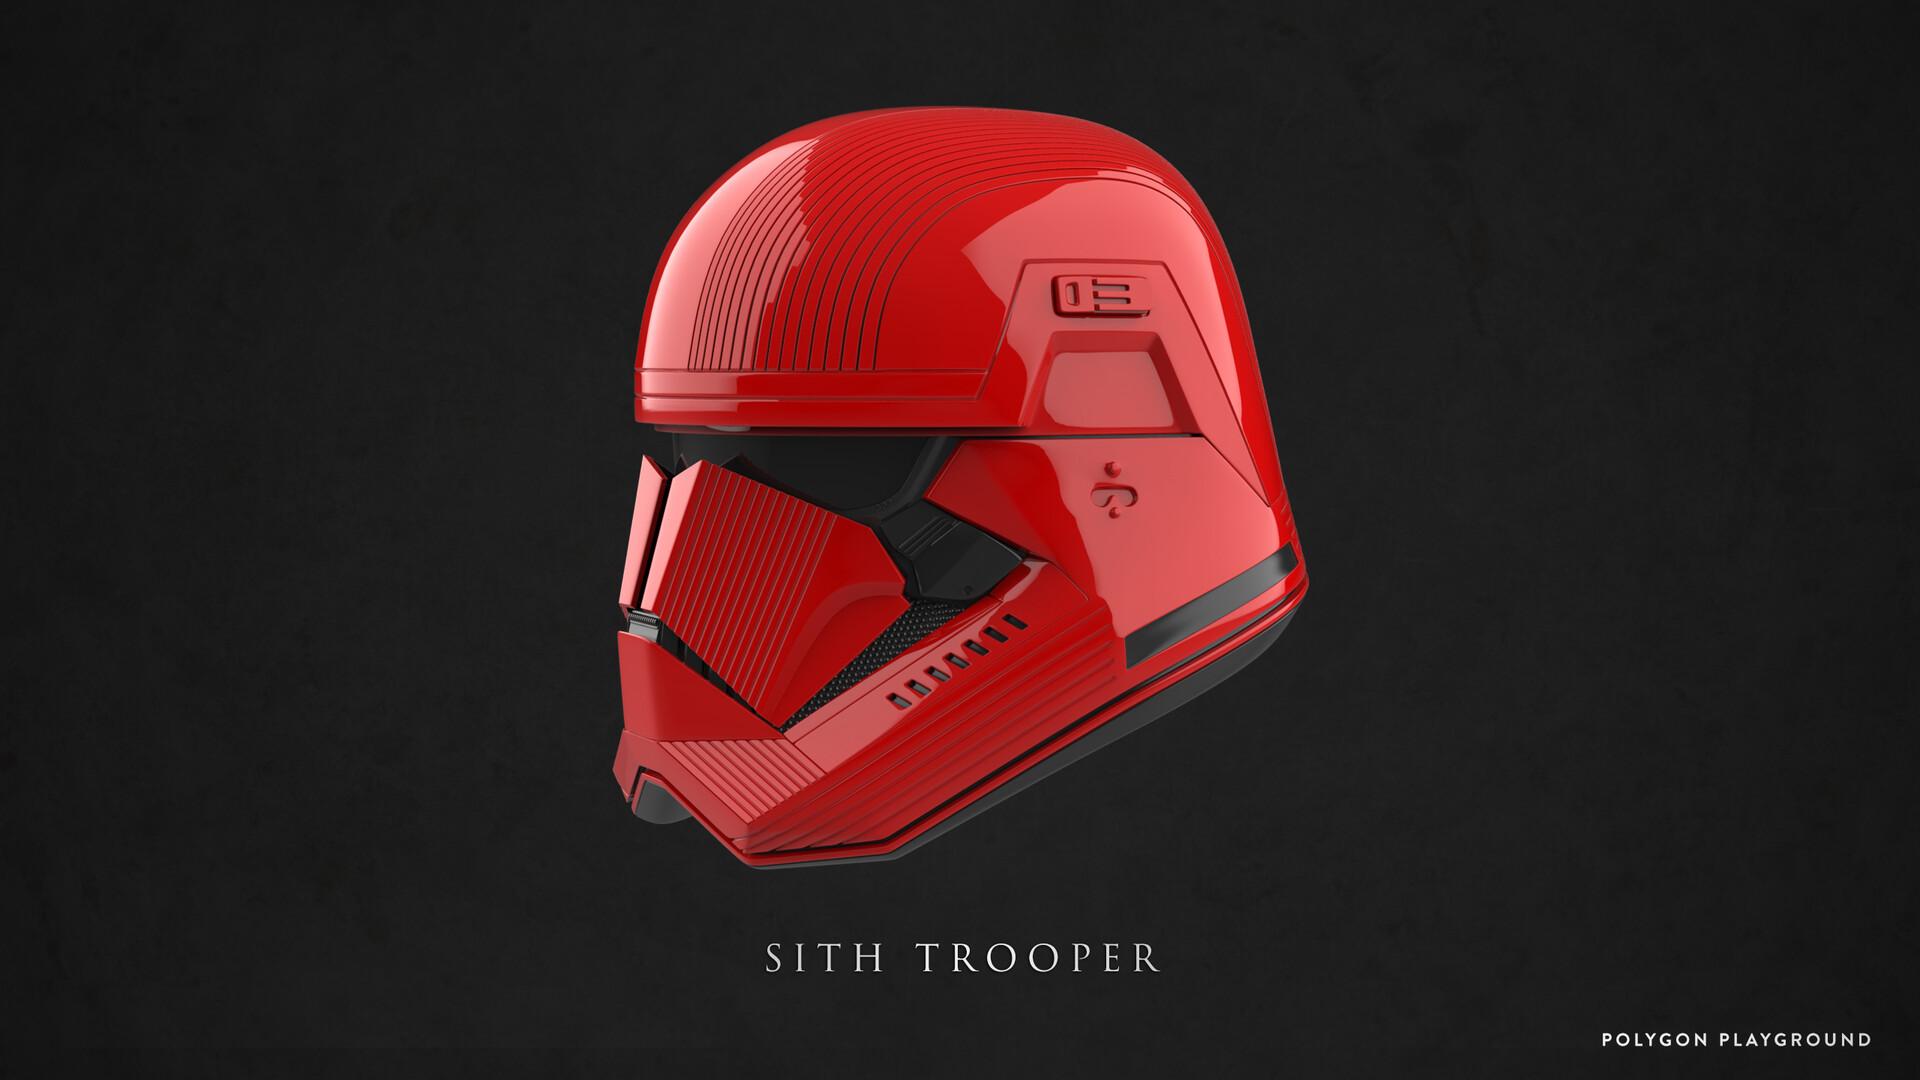 Sith Trooper Helmet, Calvin Kam